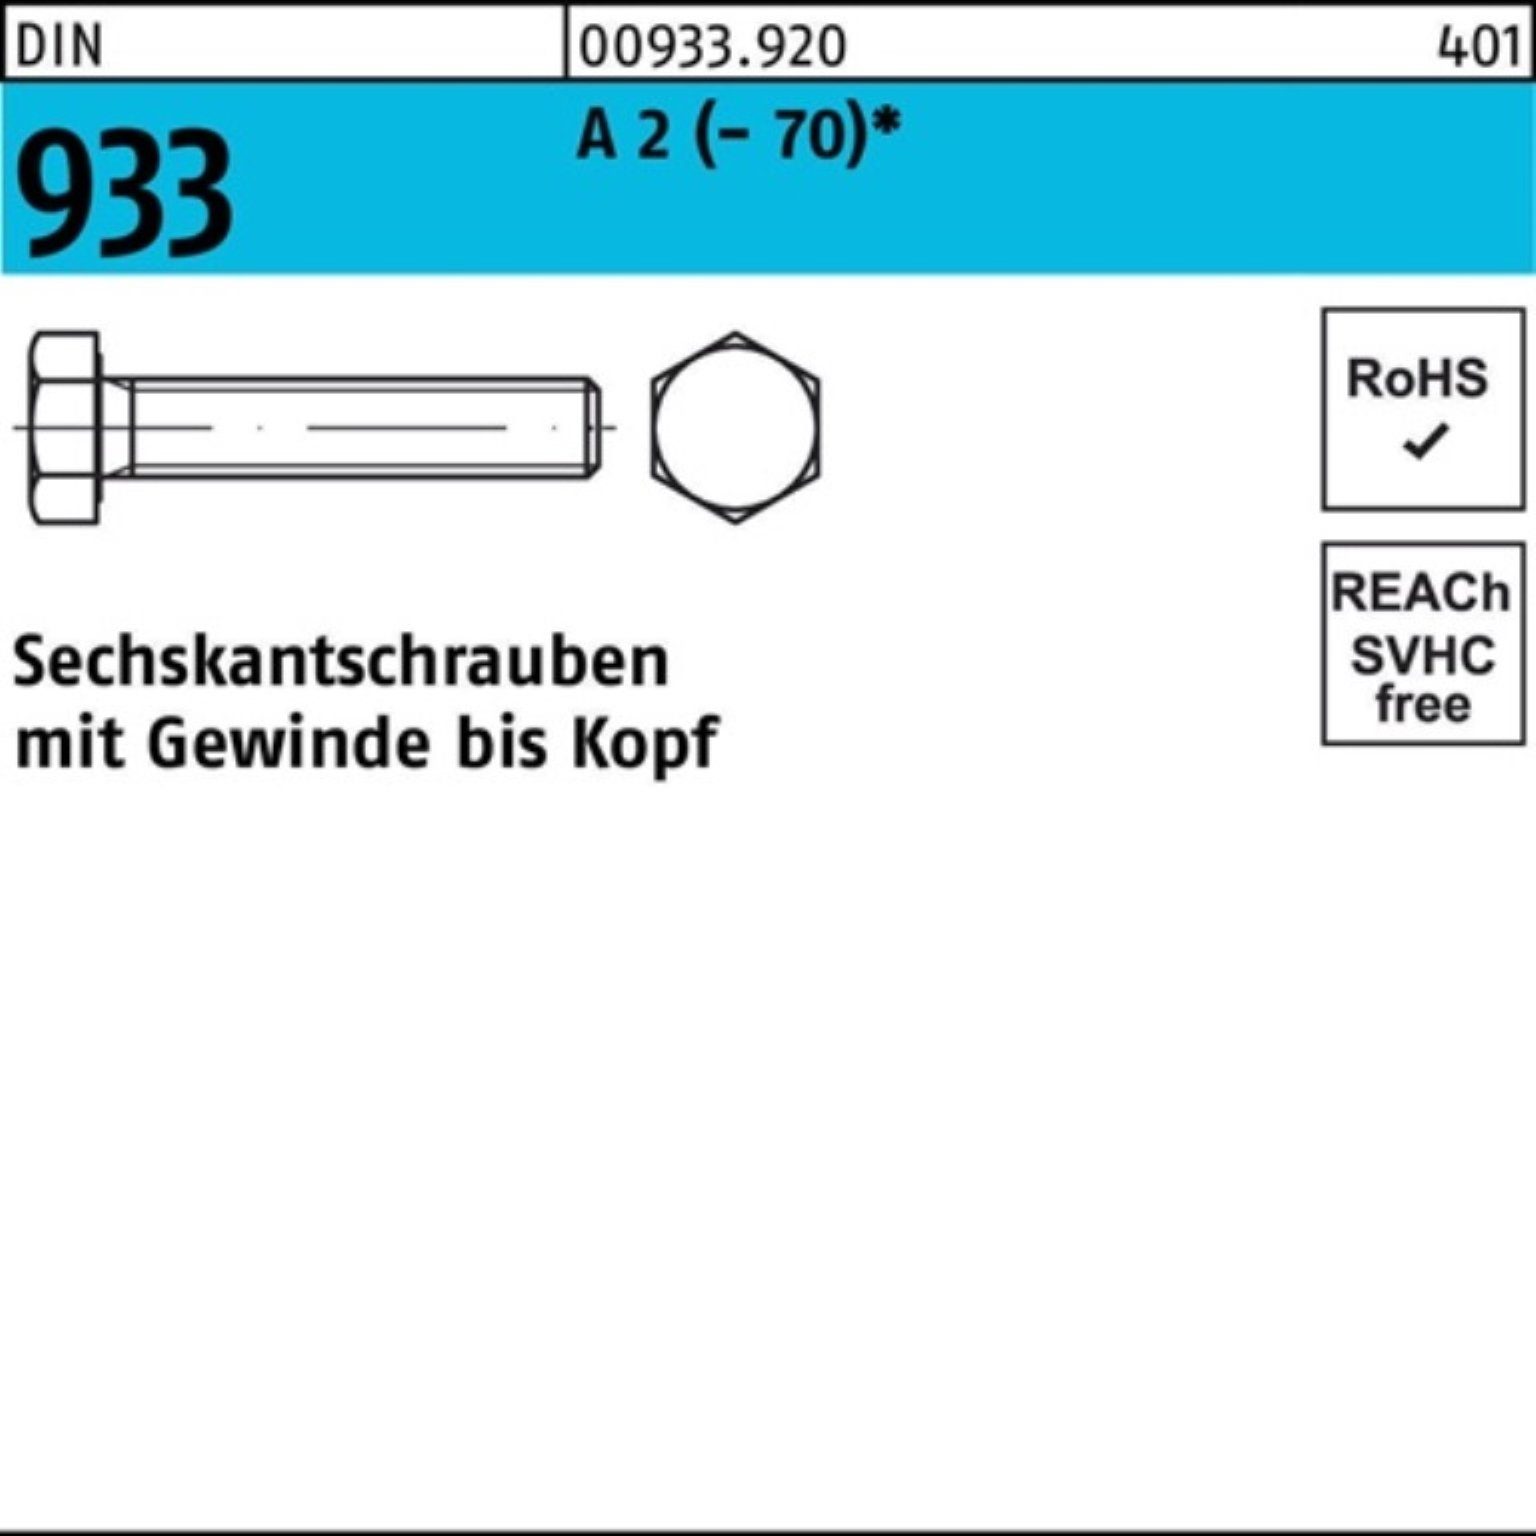 Reyher Sechskantschraube 100er 2 Stück Pack Sechskantschraube M12x DIN 200 VG A (70) 933 1 D